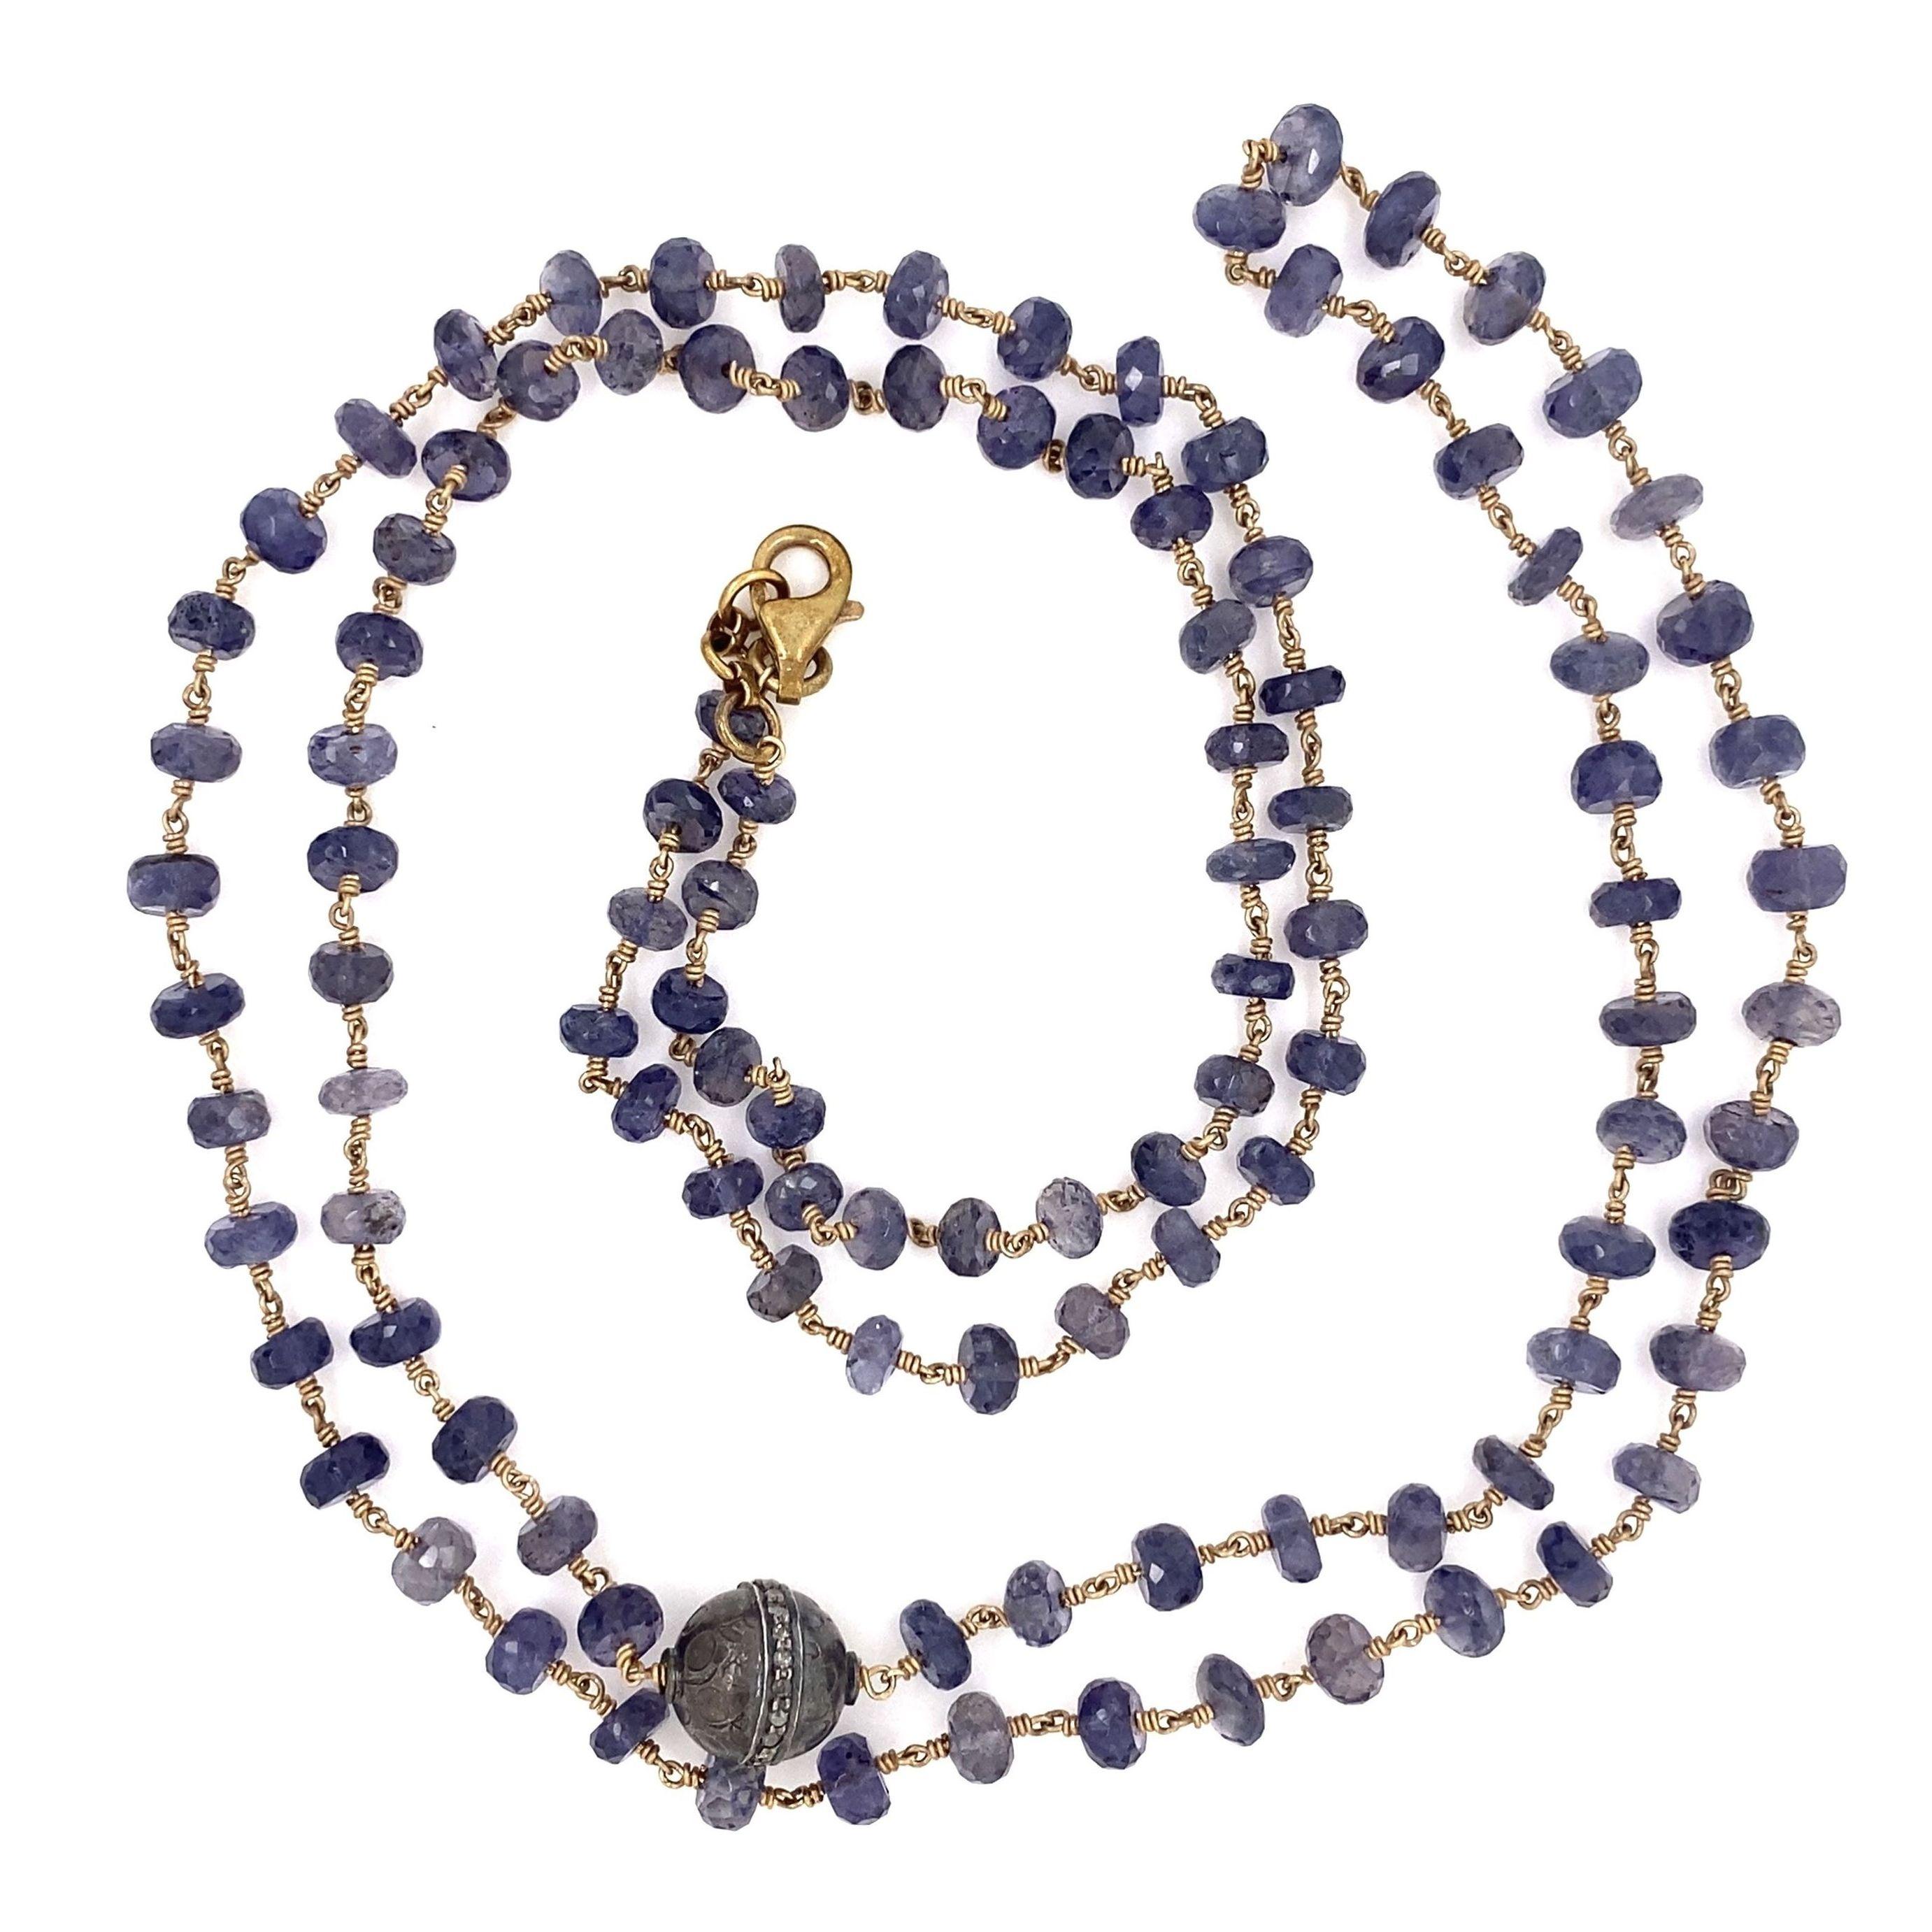 Magnifique collier à longue chaîne en argent sterling composé de perles d'iolite et de diamants. Comprenant des perles d'Iolite, environ 115.15tcw et des diamants, environ 0.27tcw. Le collier mesure environ 40